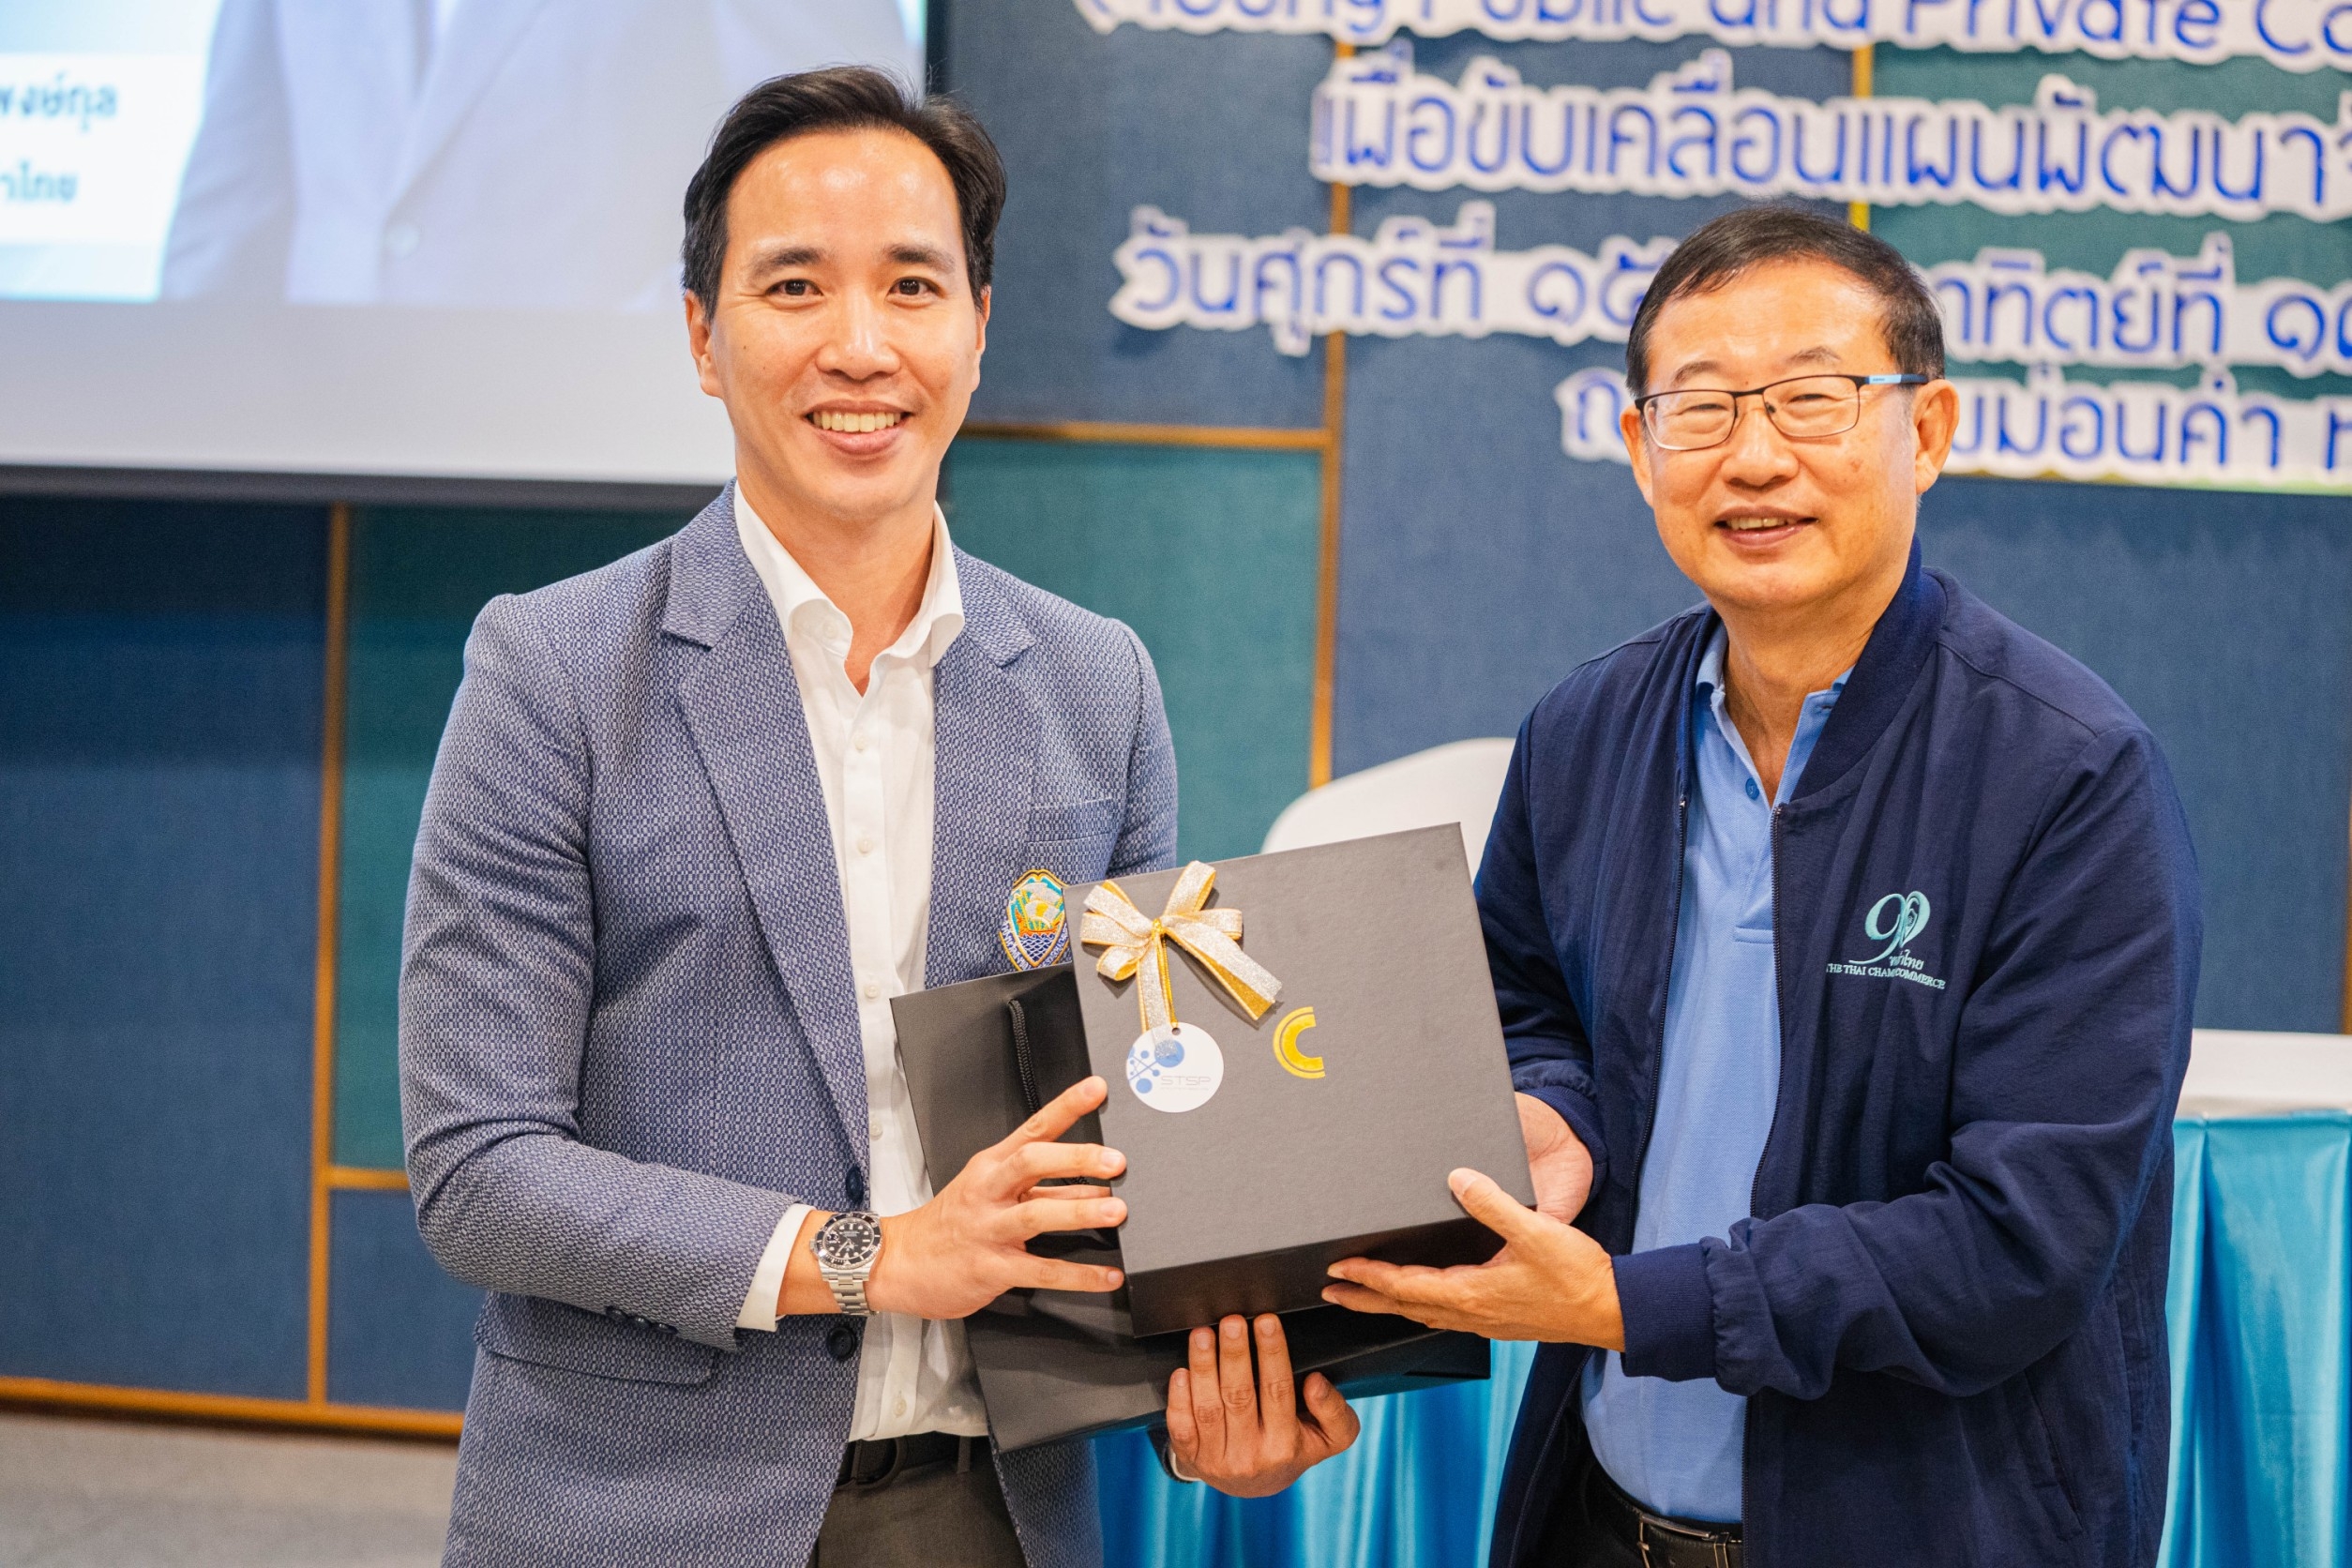 หอการค้าจังหวัดสงขลา ได้รับมอบหมายจาก หอการค้าไทย จัดอบรมโครงการหลักสูตรพัฒนาศักยภาพผู้นำคลื่นลูกใหม่ YPC (Young Public and Private Collaboration) รุ่นที่ 1